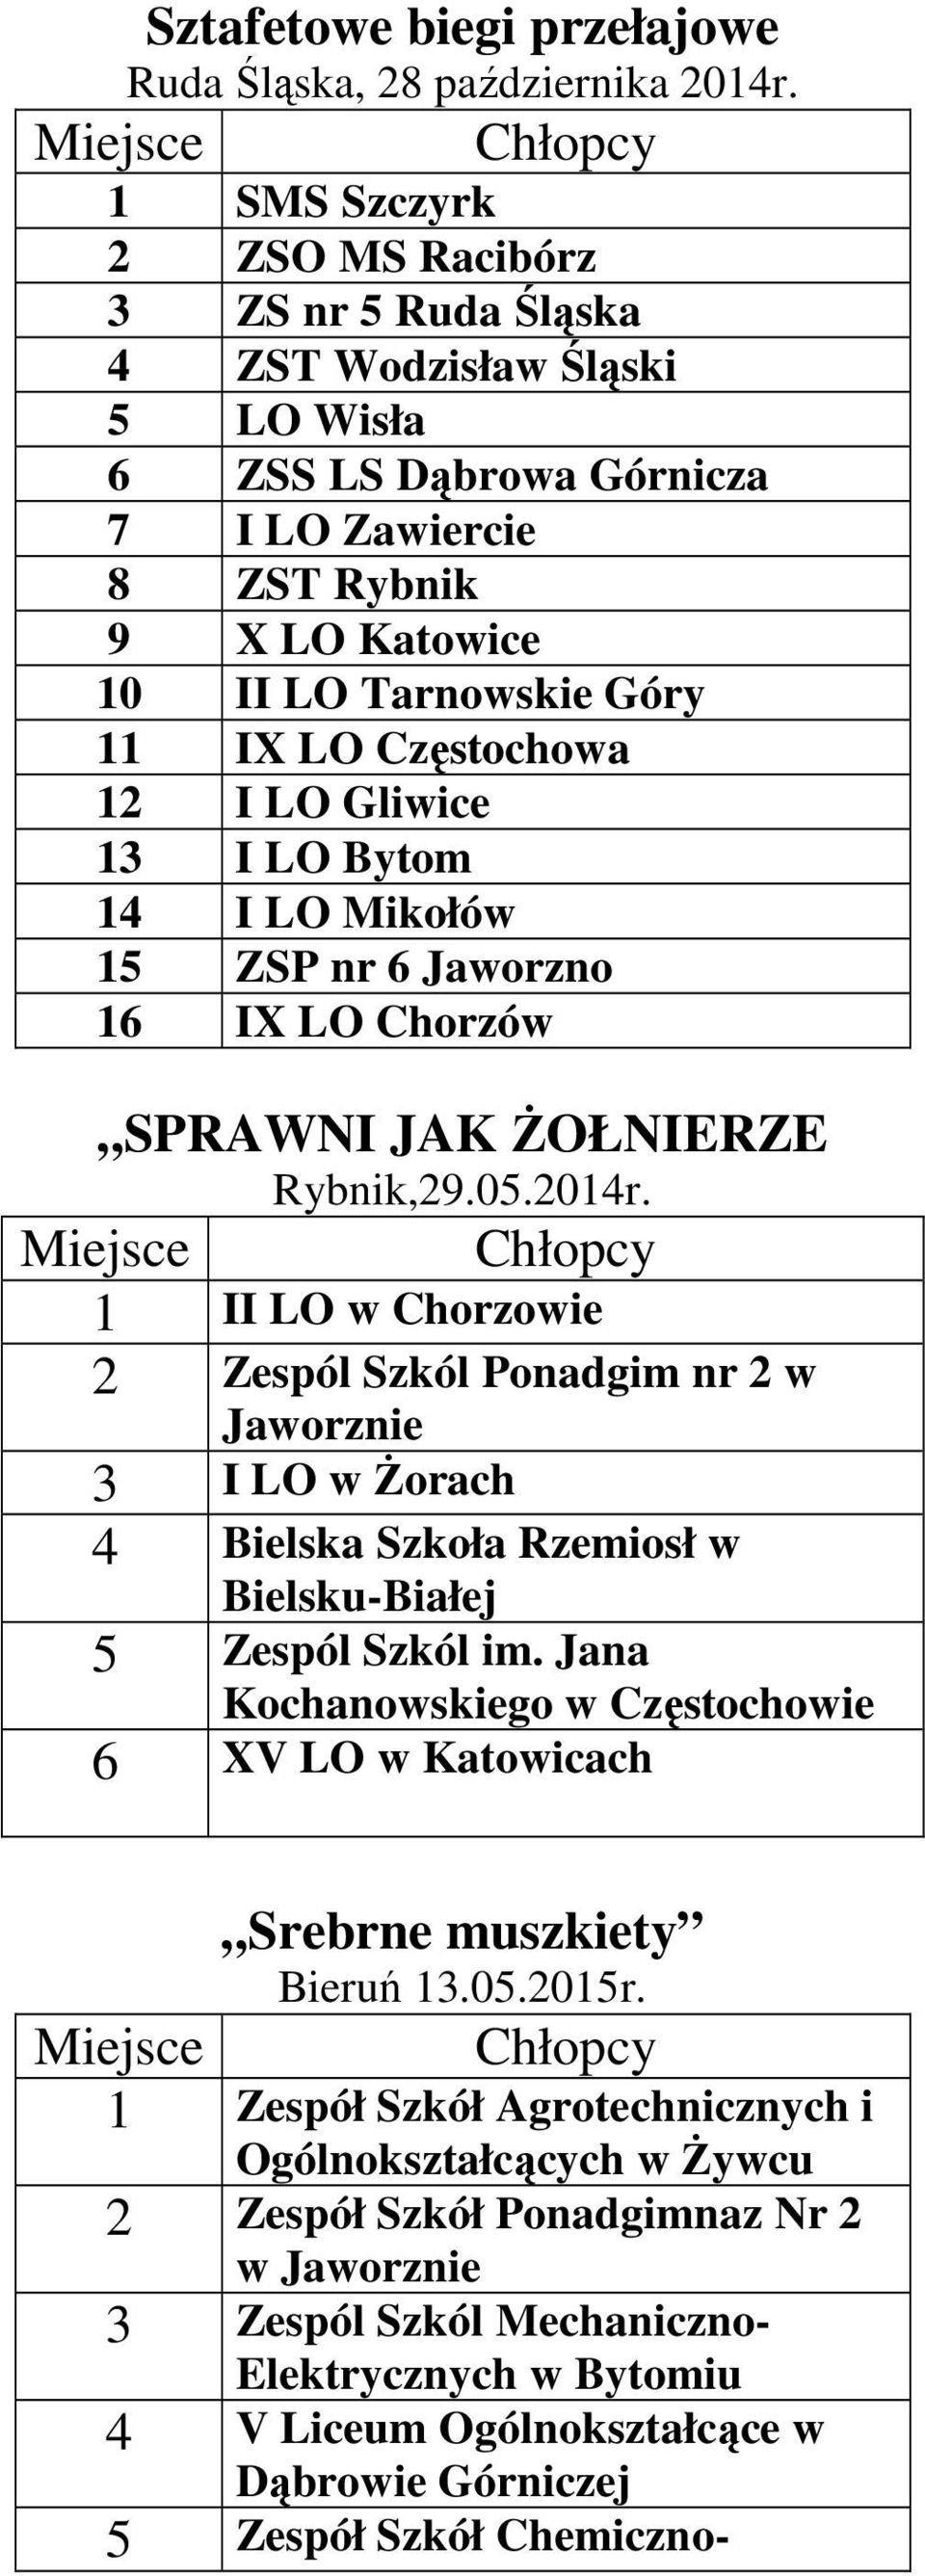 Częstochowa 12 I LO Gliwice 13 I LO Bytom 14 I LO Mikołów 15 ZSP nr 6 Jaworzno 16 IX LO Chorzów SPRAWNI JAK ŻOŁNIERZE Rybnik,29.05.2014r.